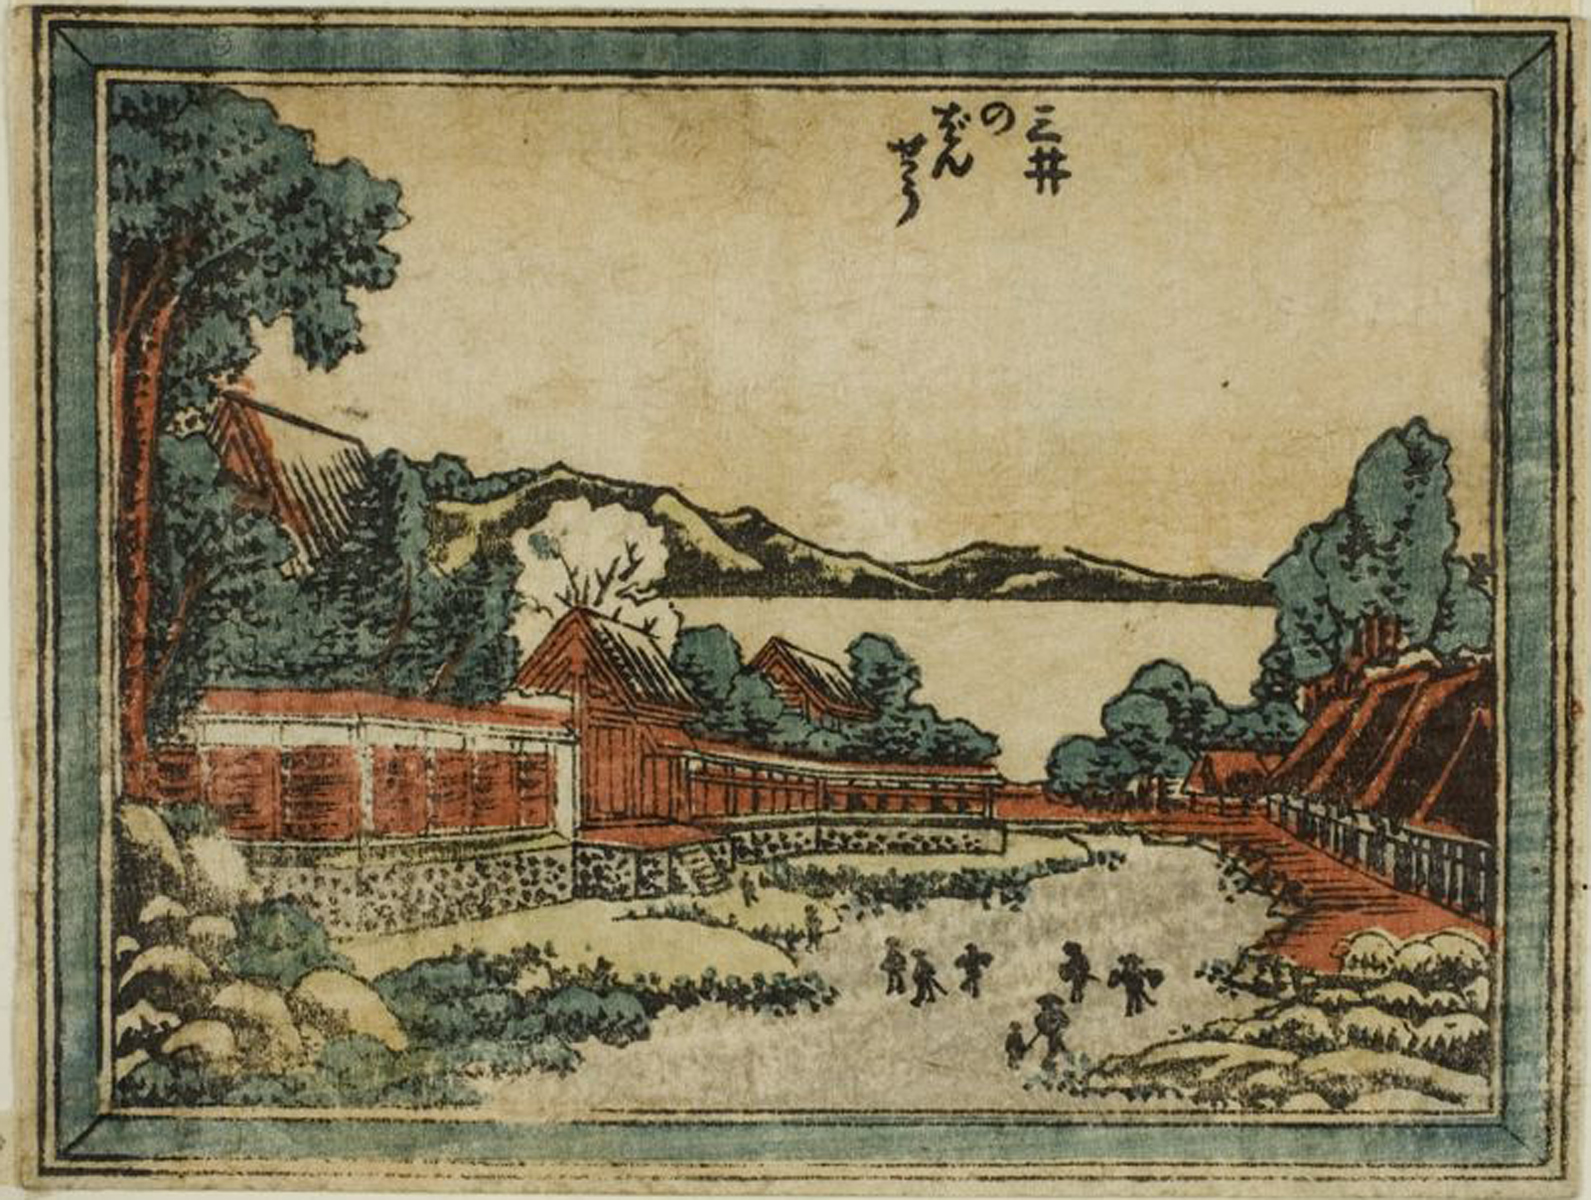 Hokusai - Evening Bell at Mii - 1804 Edition